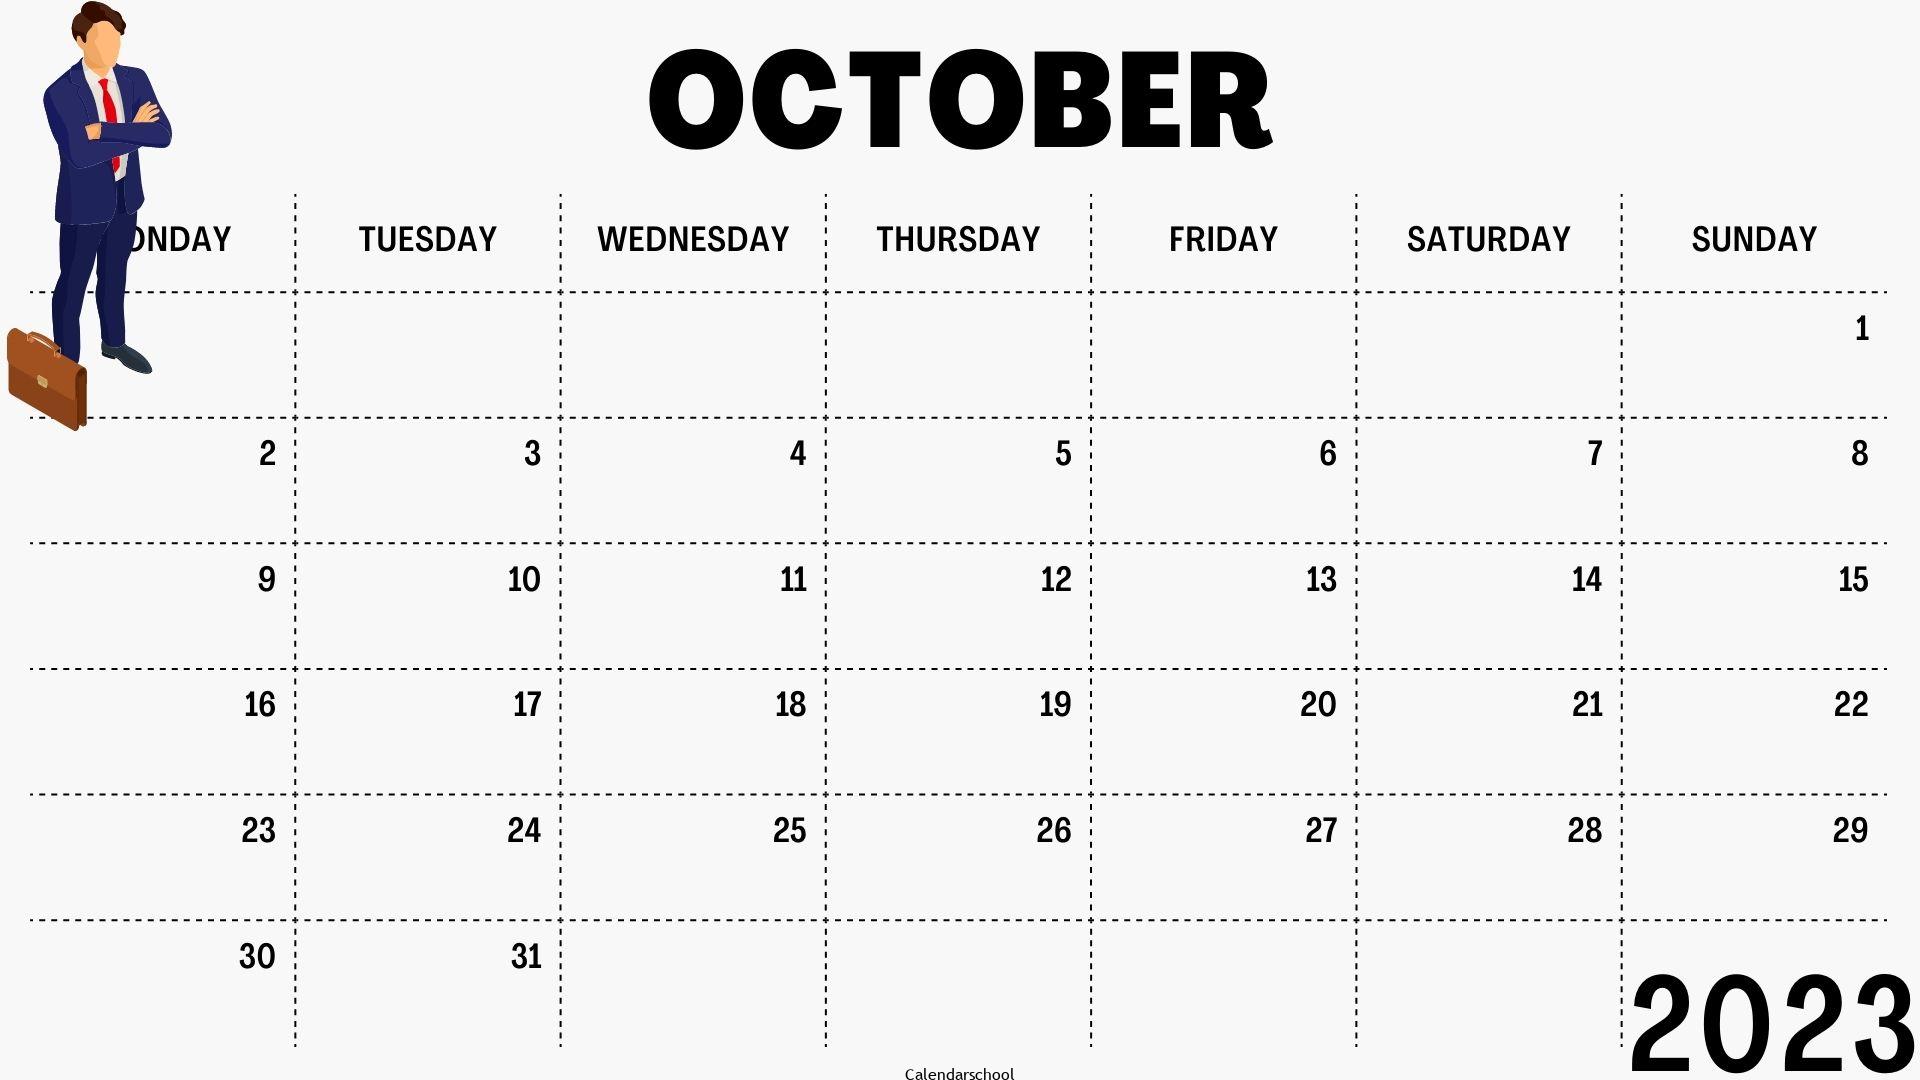 Calendar October 2023 With Bank Holidays